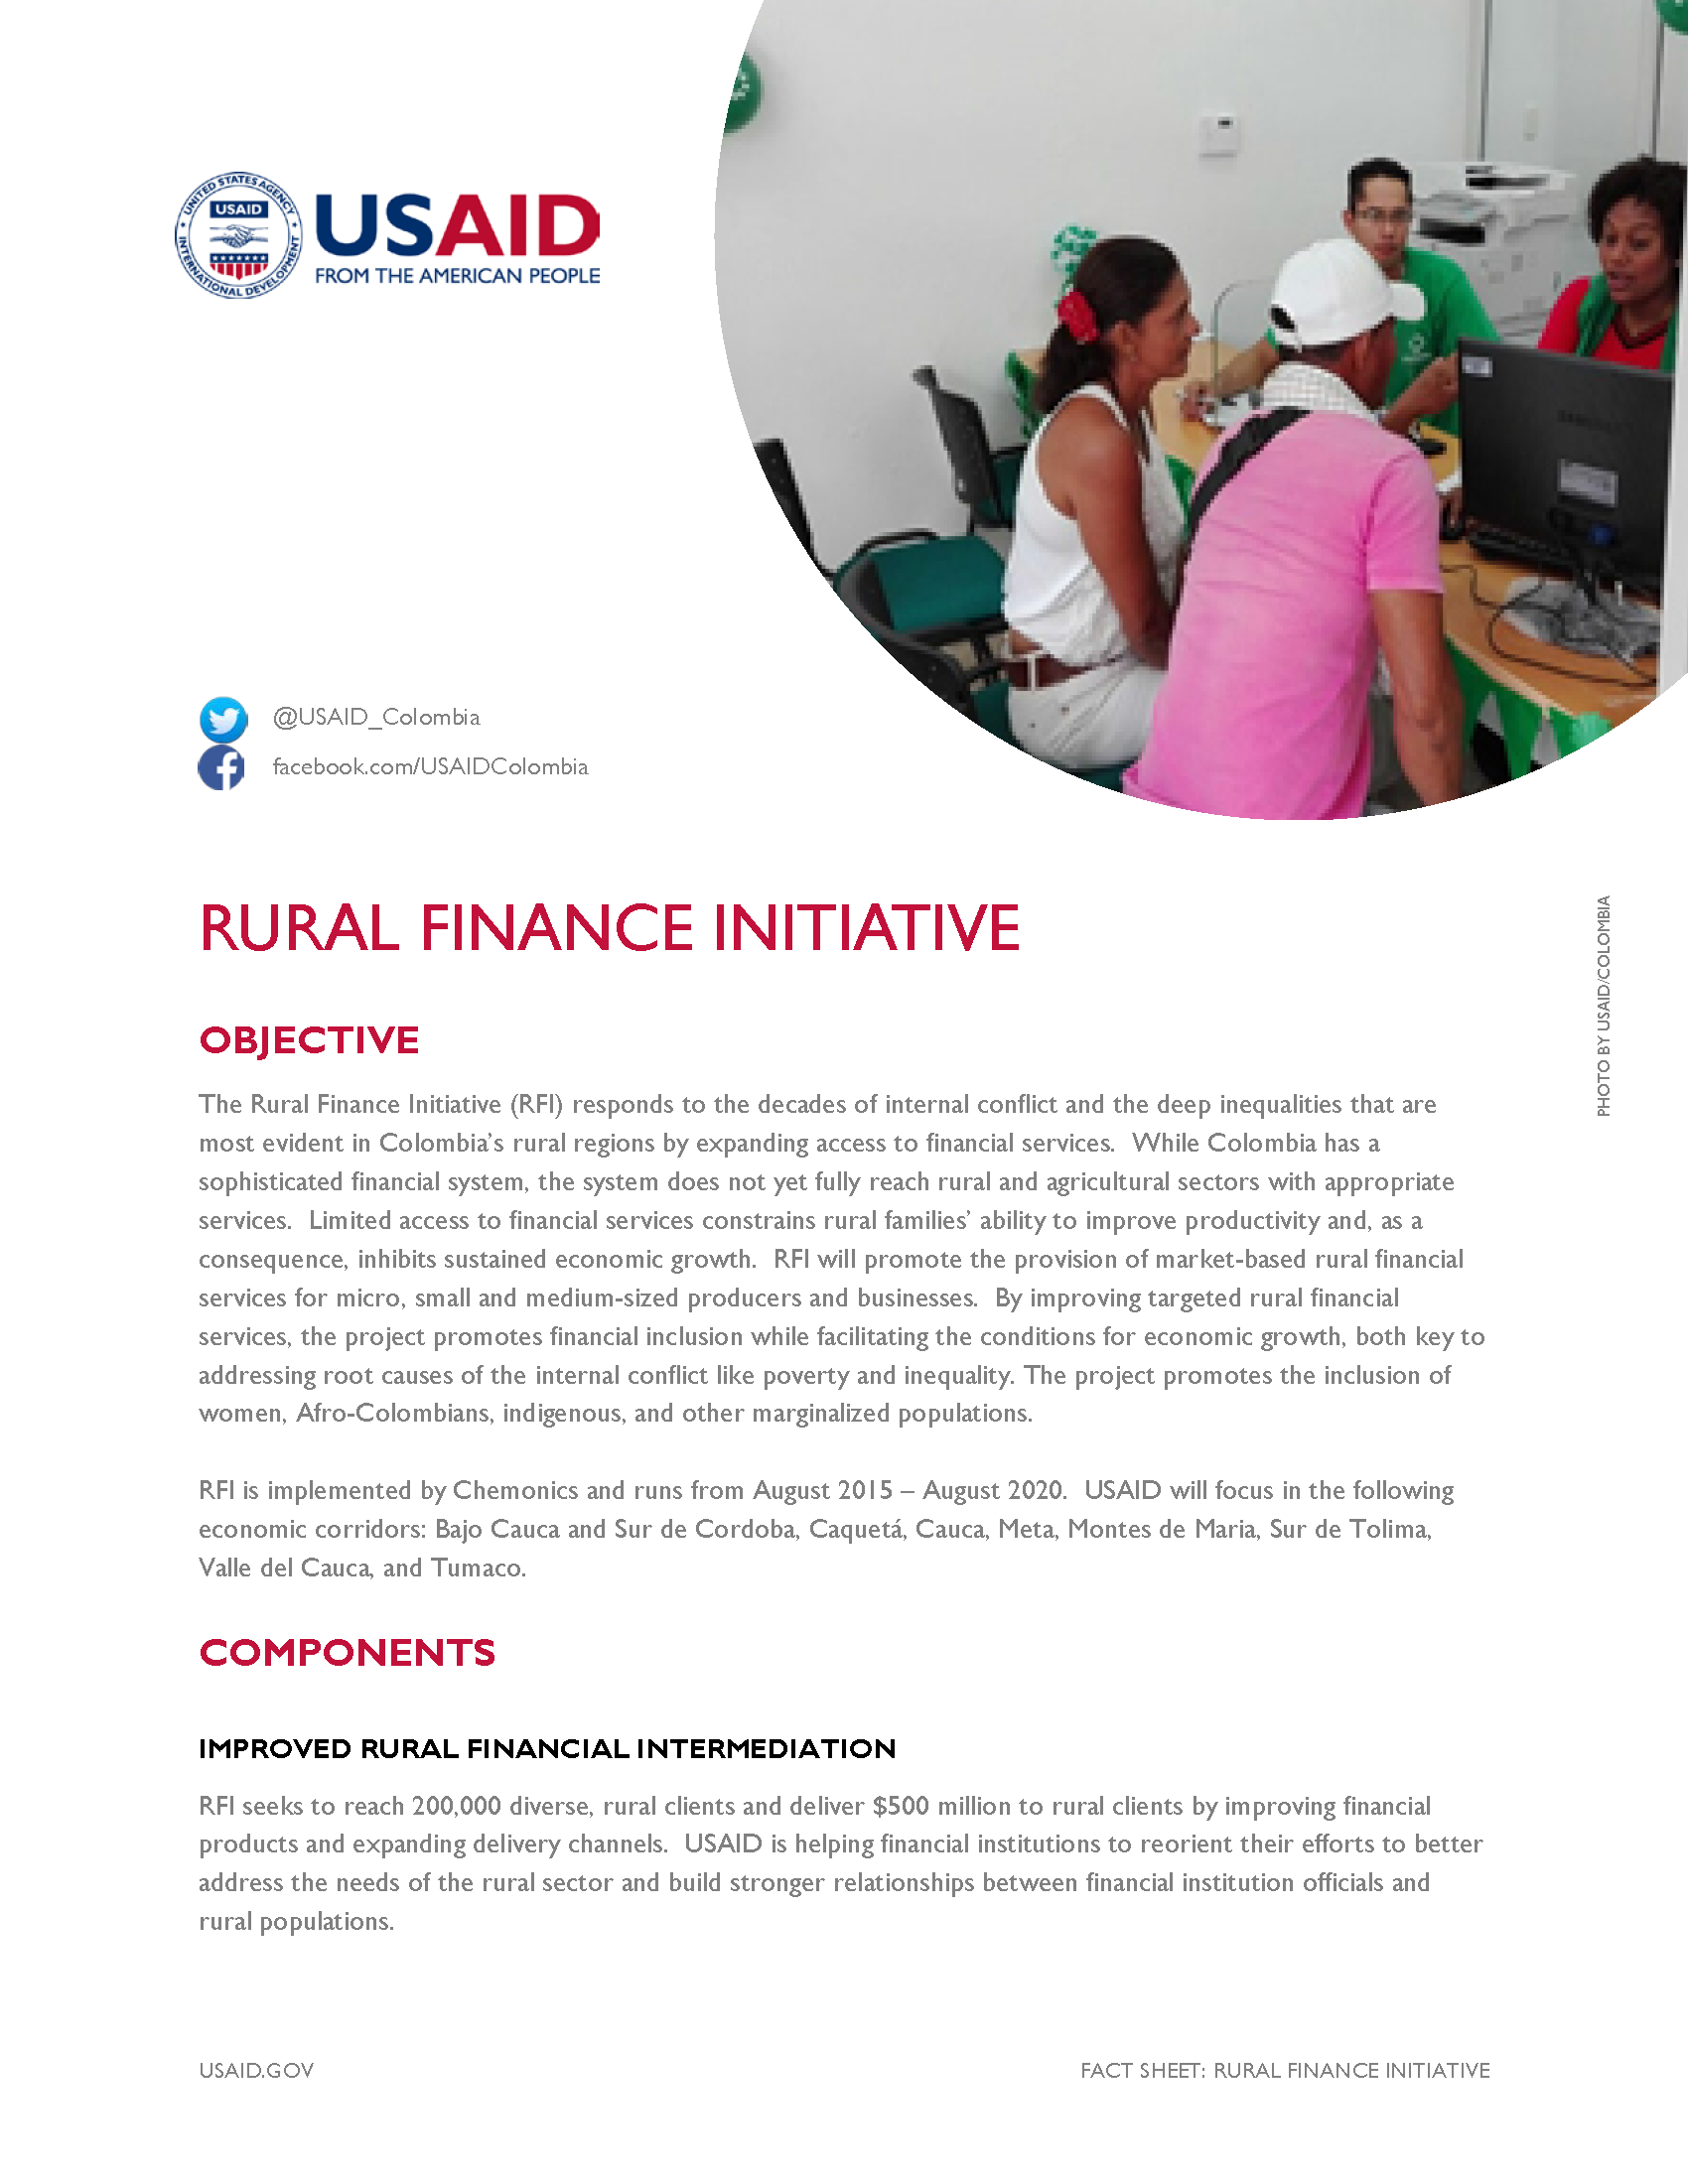 Rural Finance Initiative Fact Sheet